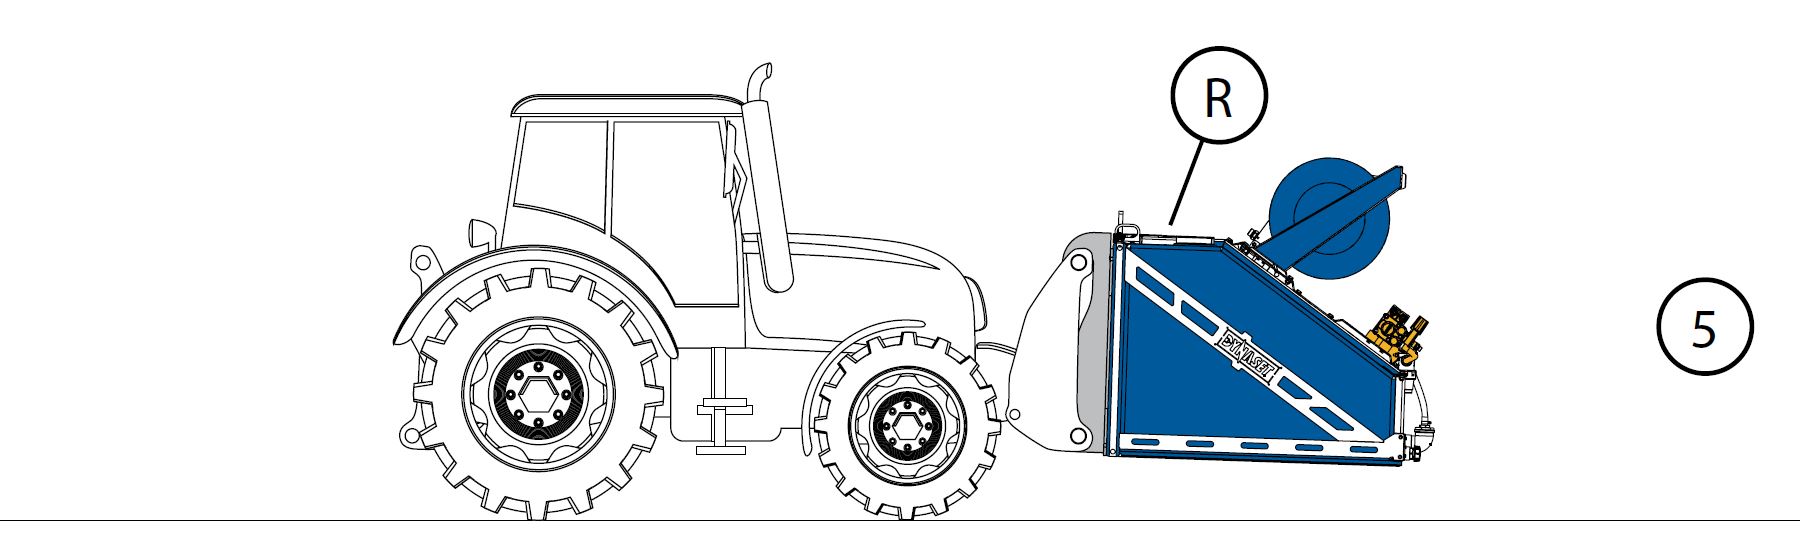 KPL180XL-V5 - Einbaufall 5 - Montage am Traktor, mit Wassertank